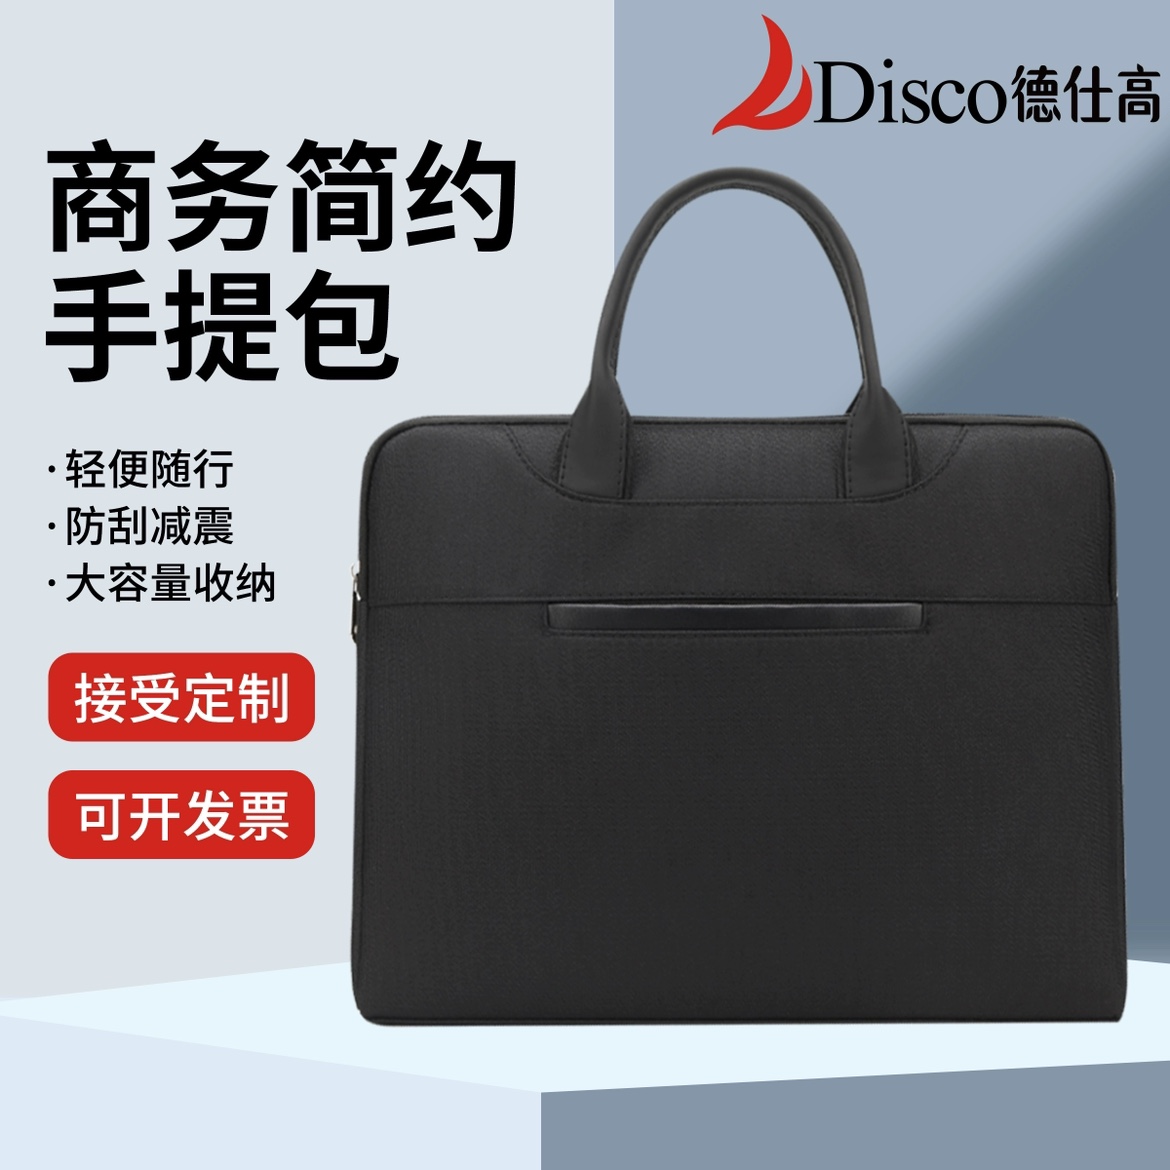 德仕高D-5203商务手提包会议包资料袋公文包手提电脑包可定制印刷